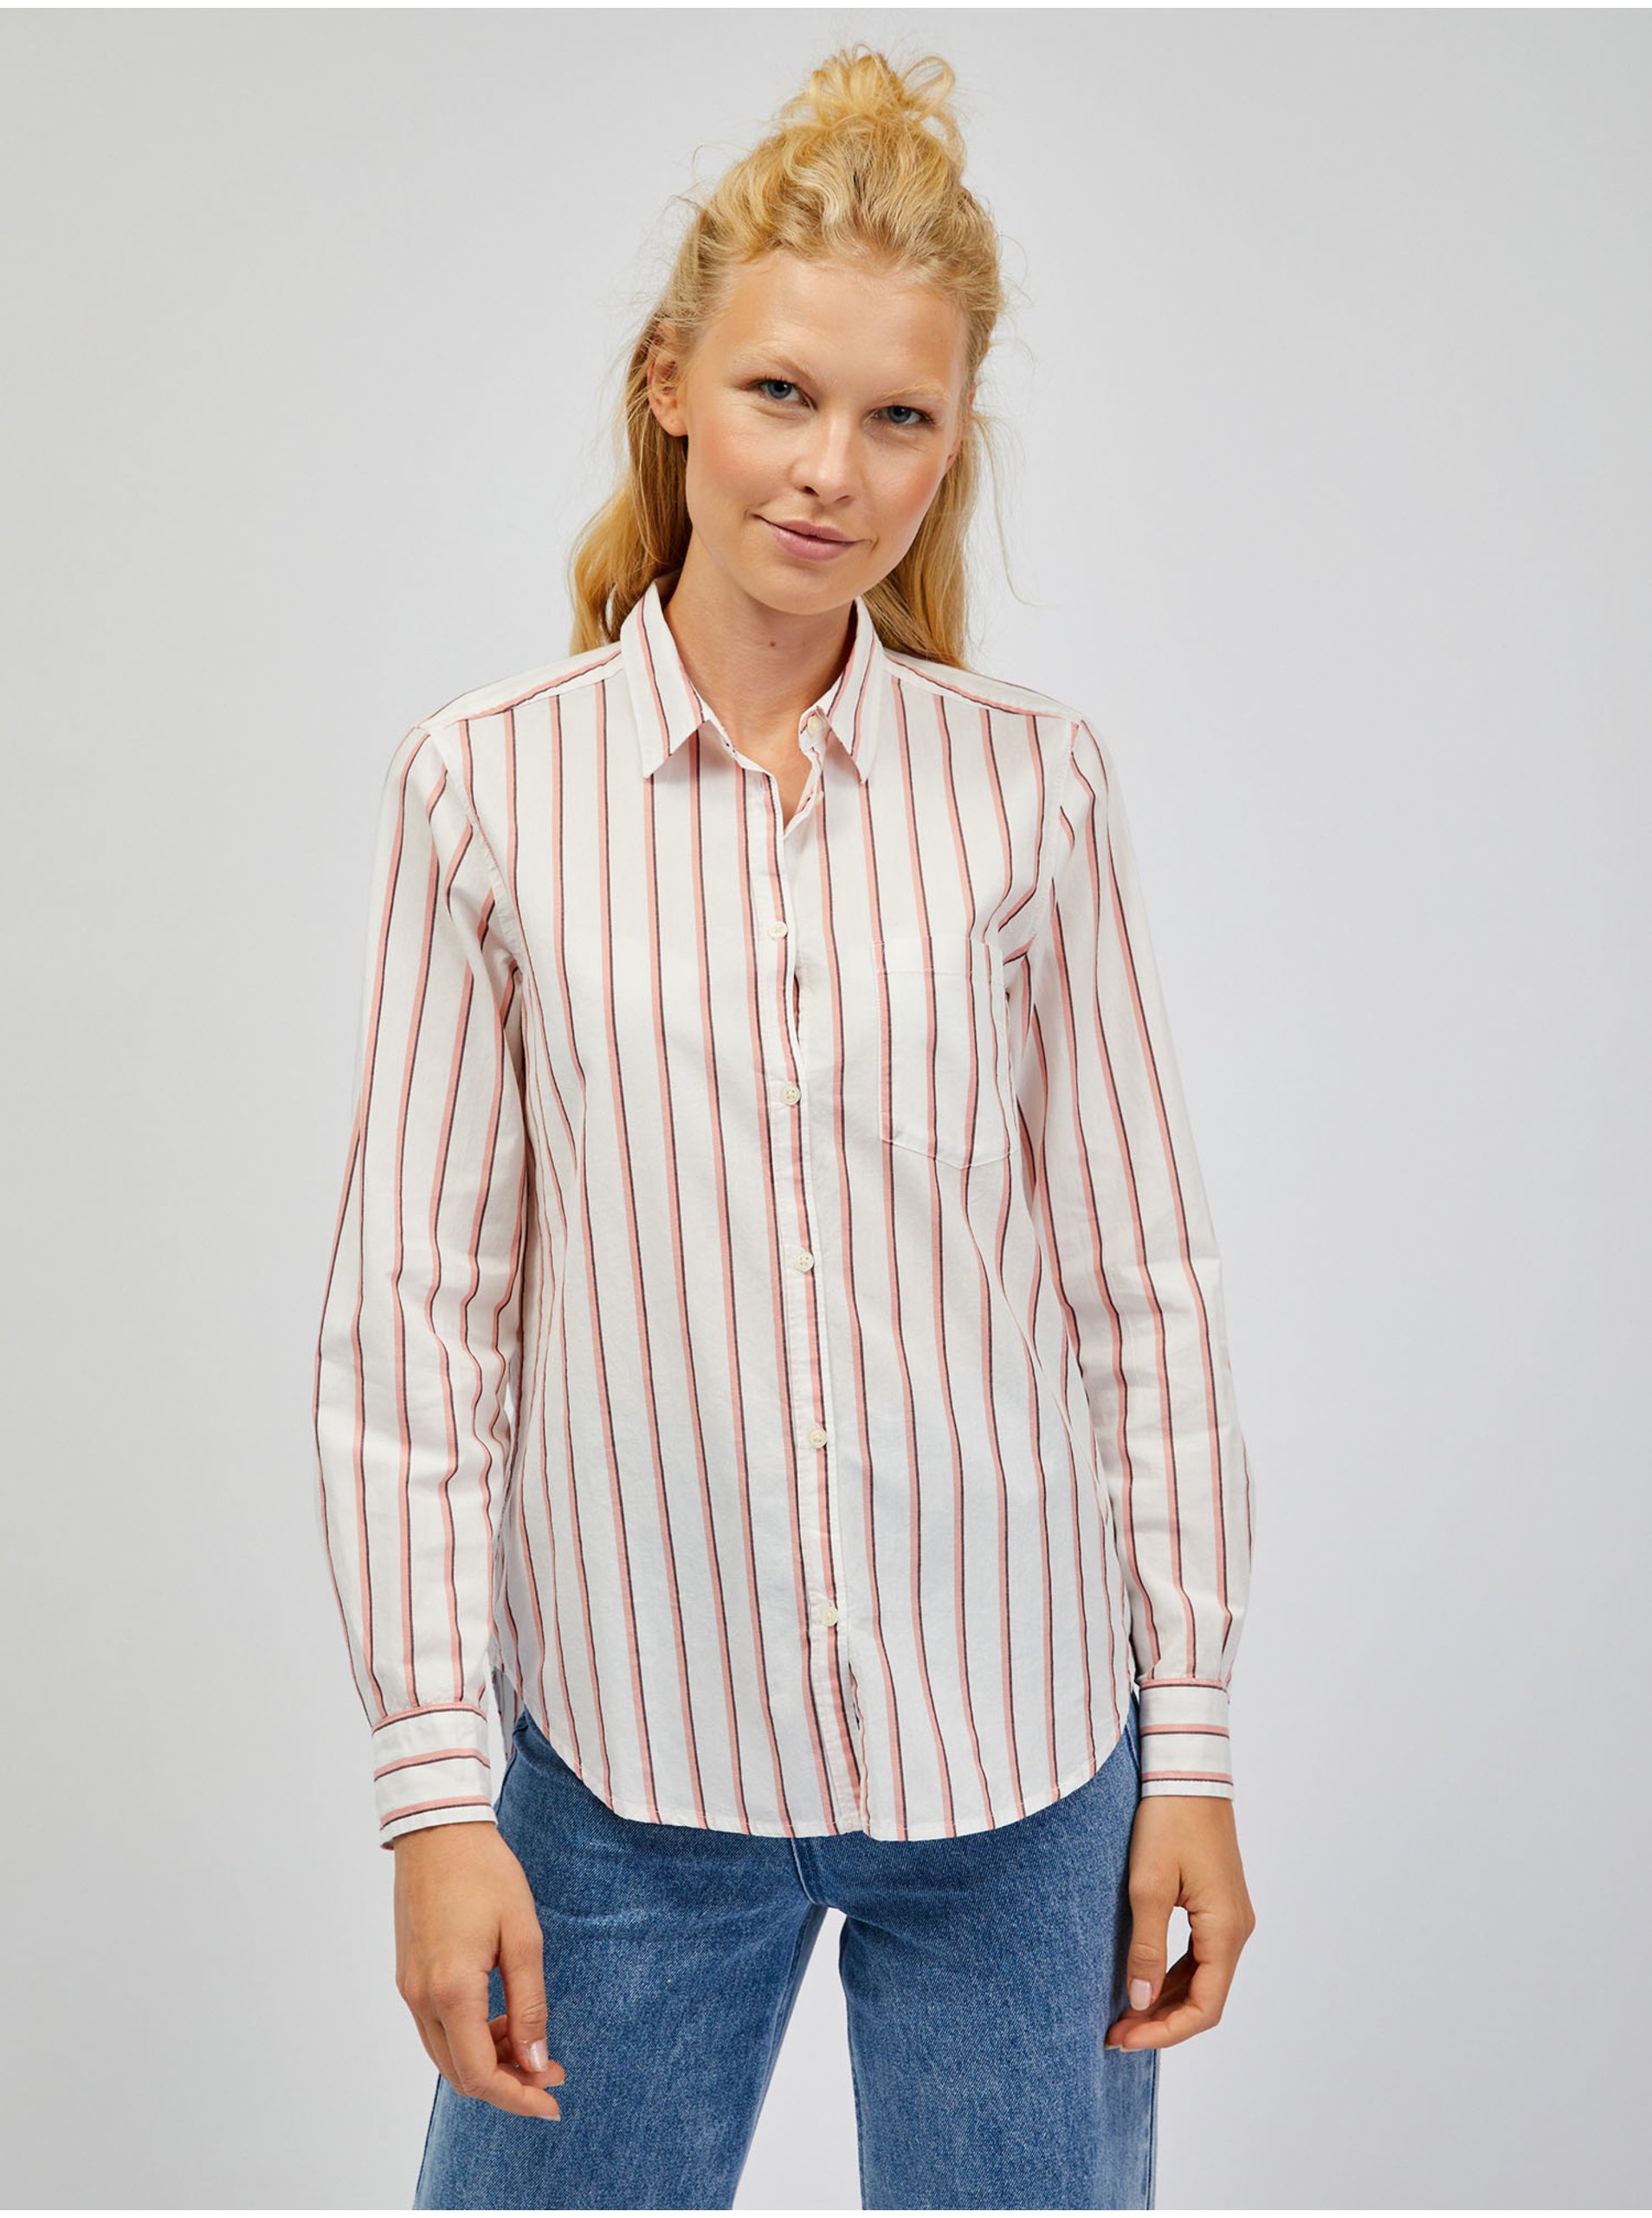 Lacno Ružovo-biela dámska pruhovaná košeľa GAP classic